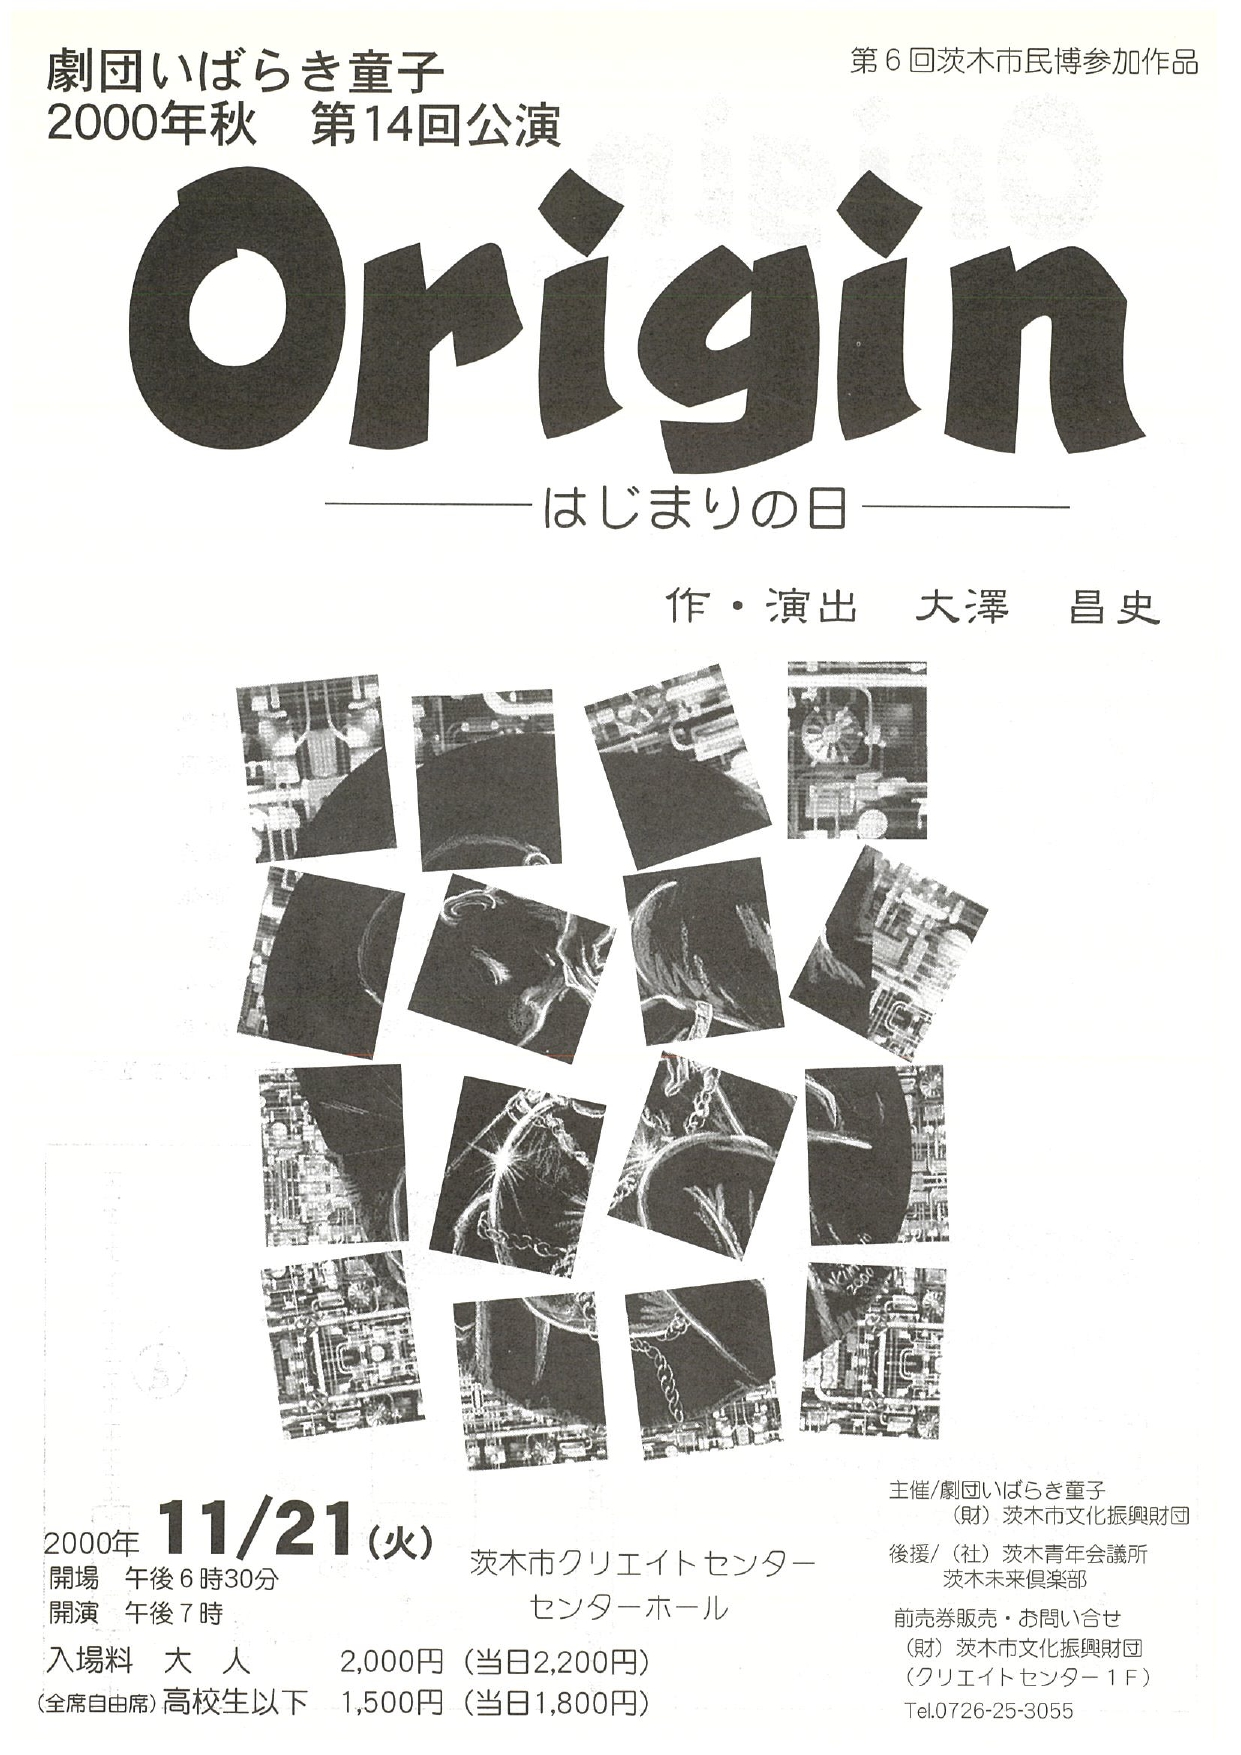 劇団いばらき童子 2000年秋 第14回公演 Origin　－はじまりの日－